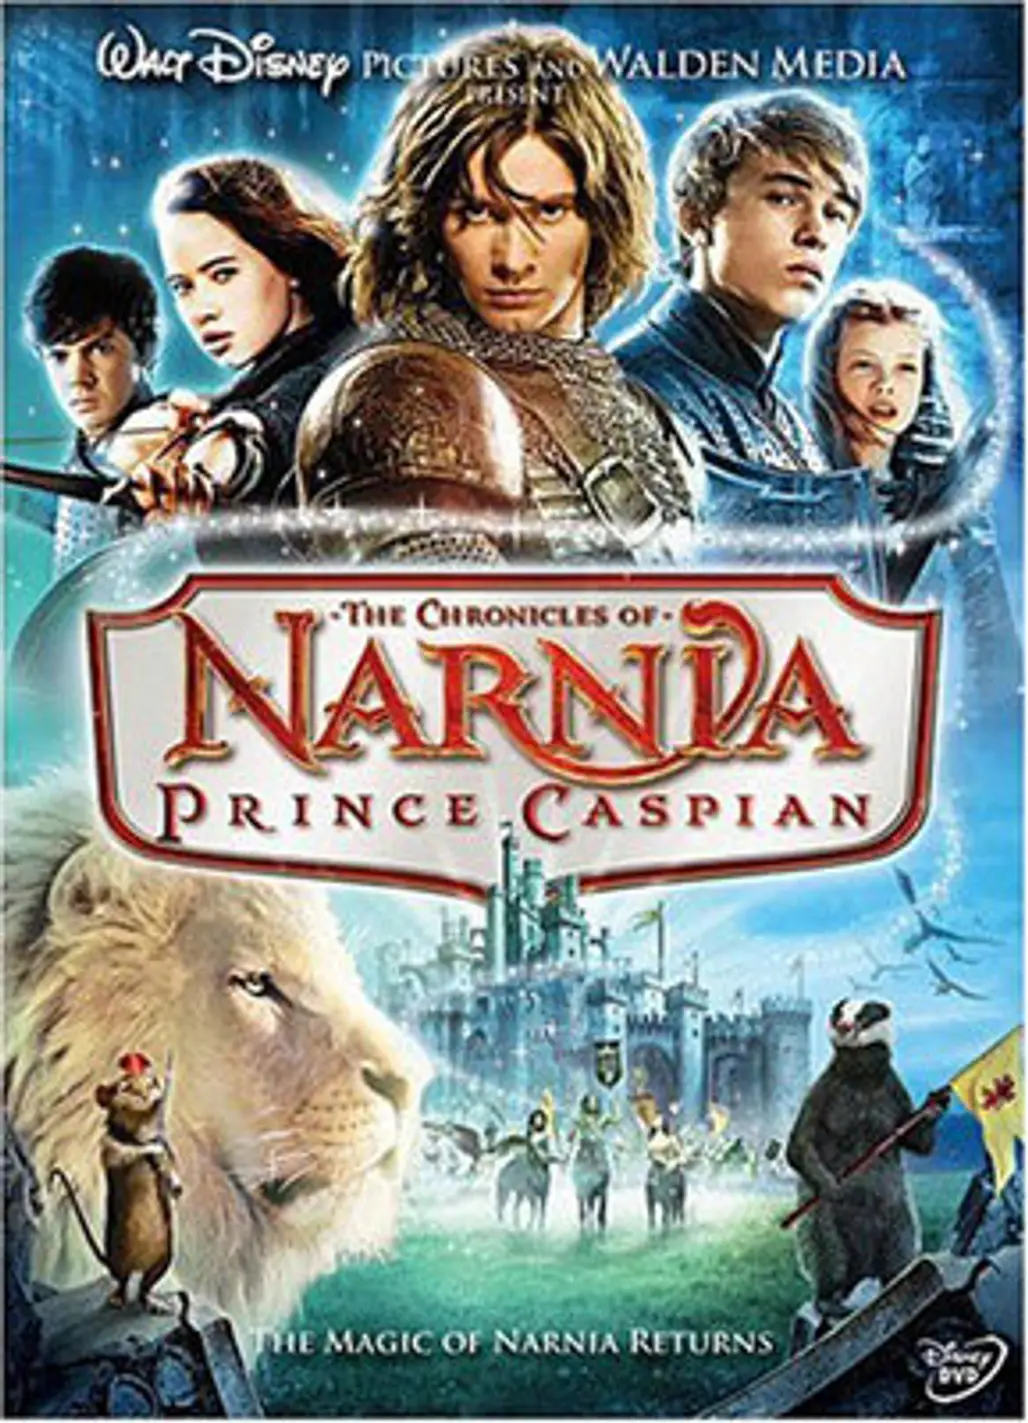 Aslan in the “Narnia” Movies